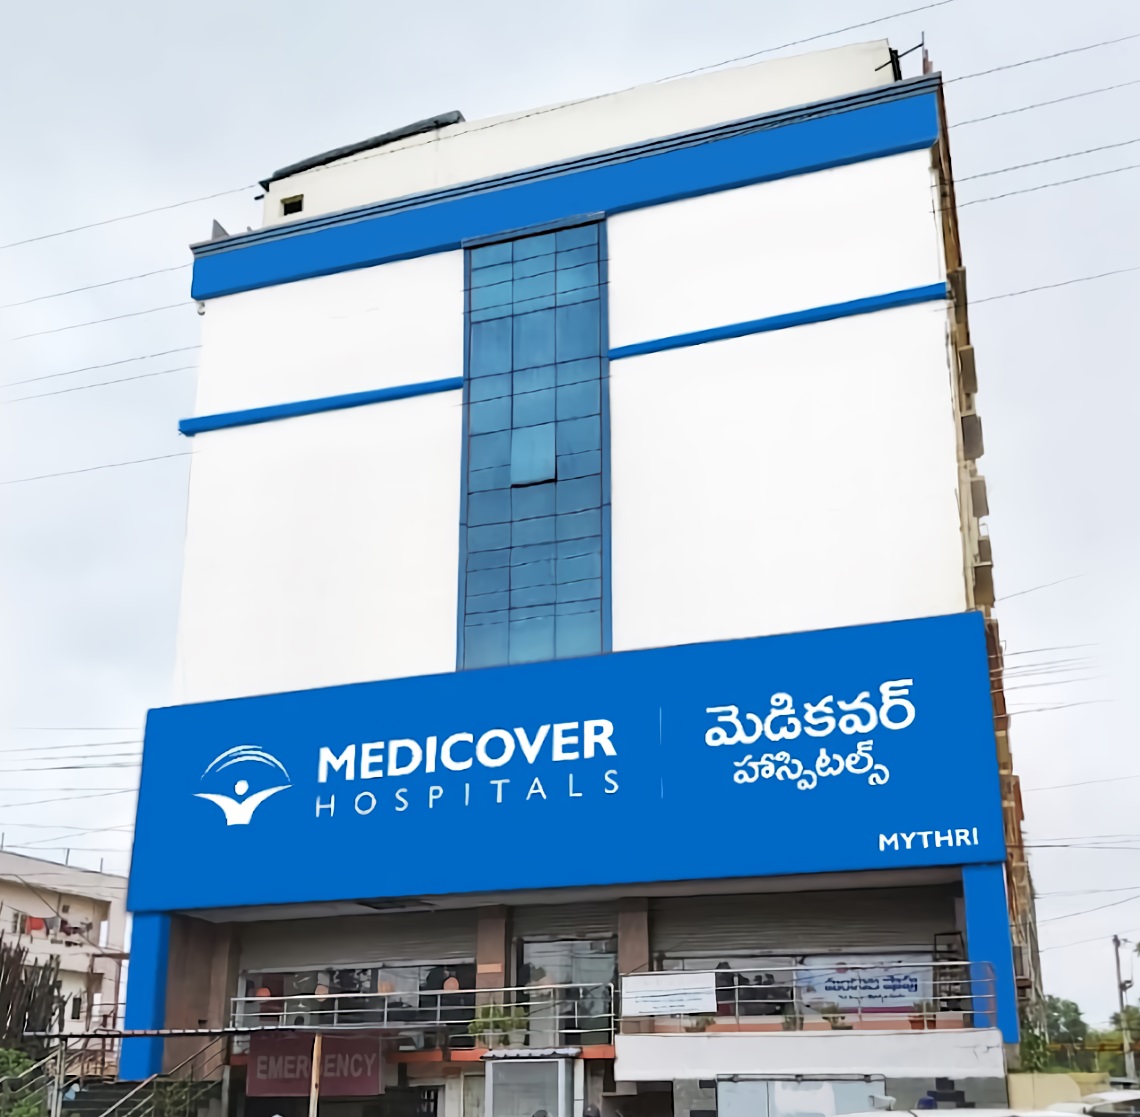 Medicover Hospital - Chandanagar